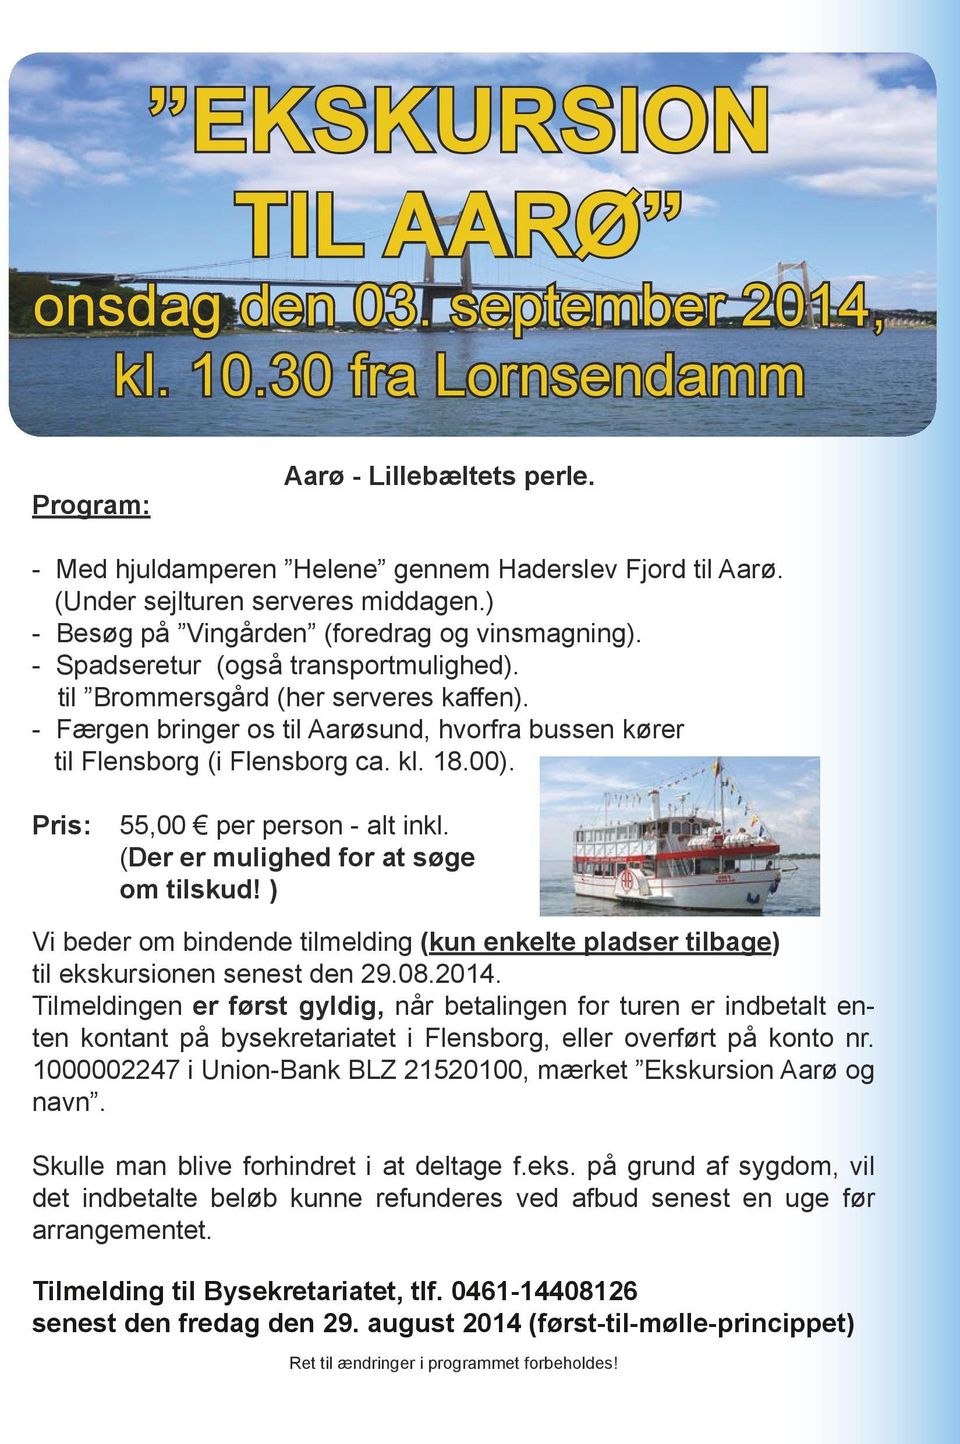 - Færgen bringer os til Aarøsund, hvorfra bussen kører til Flensborg (i Flensborg ca. kl. 18.00). Pris: 55,00 per person - alt inkl. (Der er mulighed for at søge om tilskud!